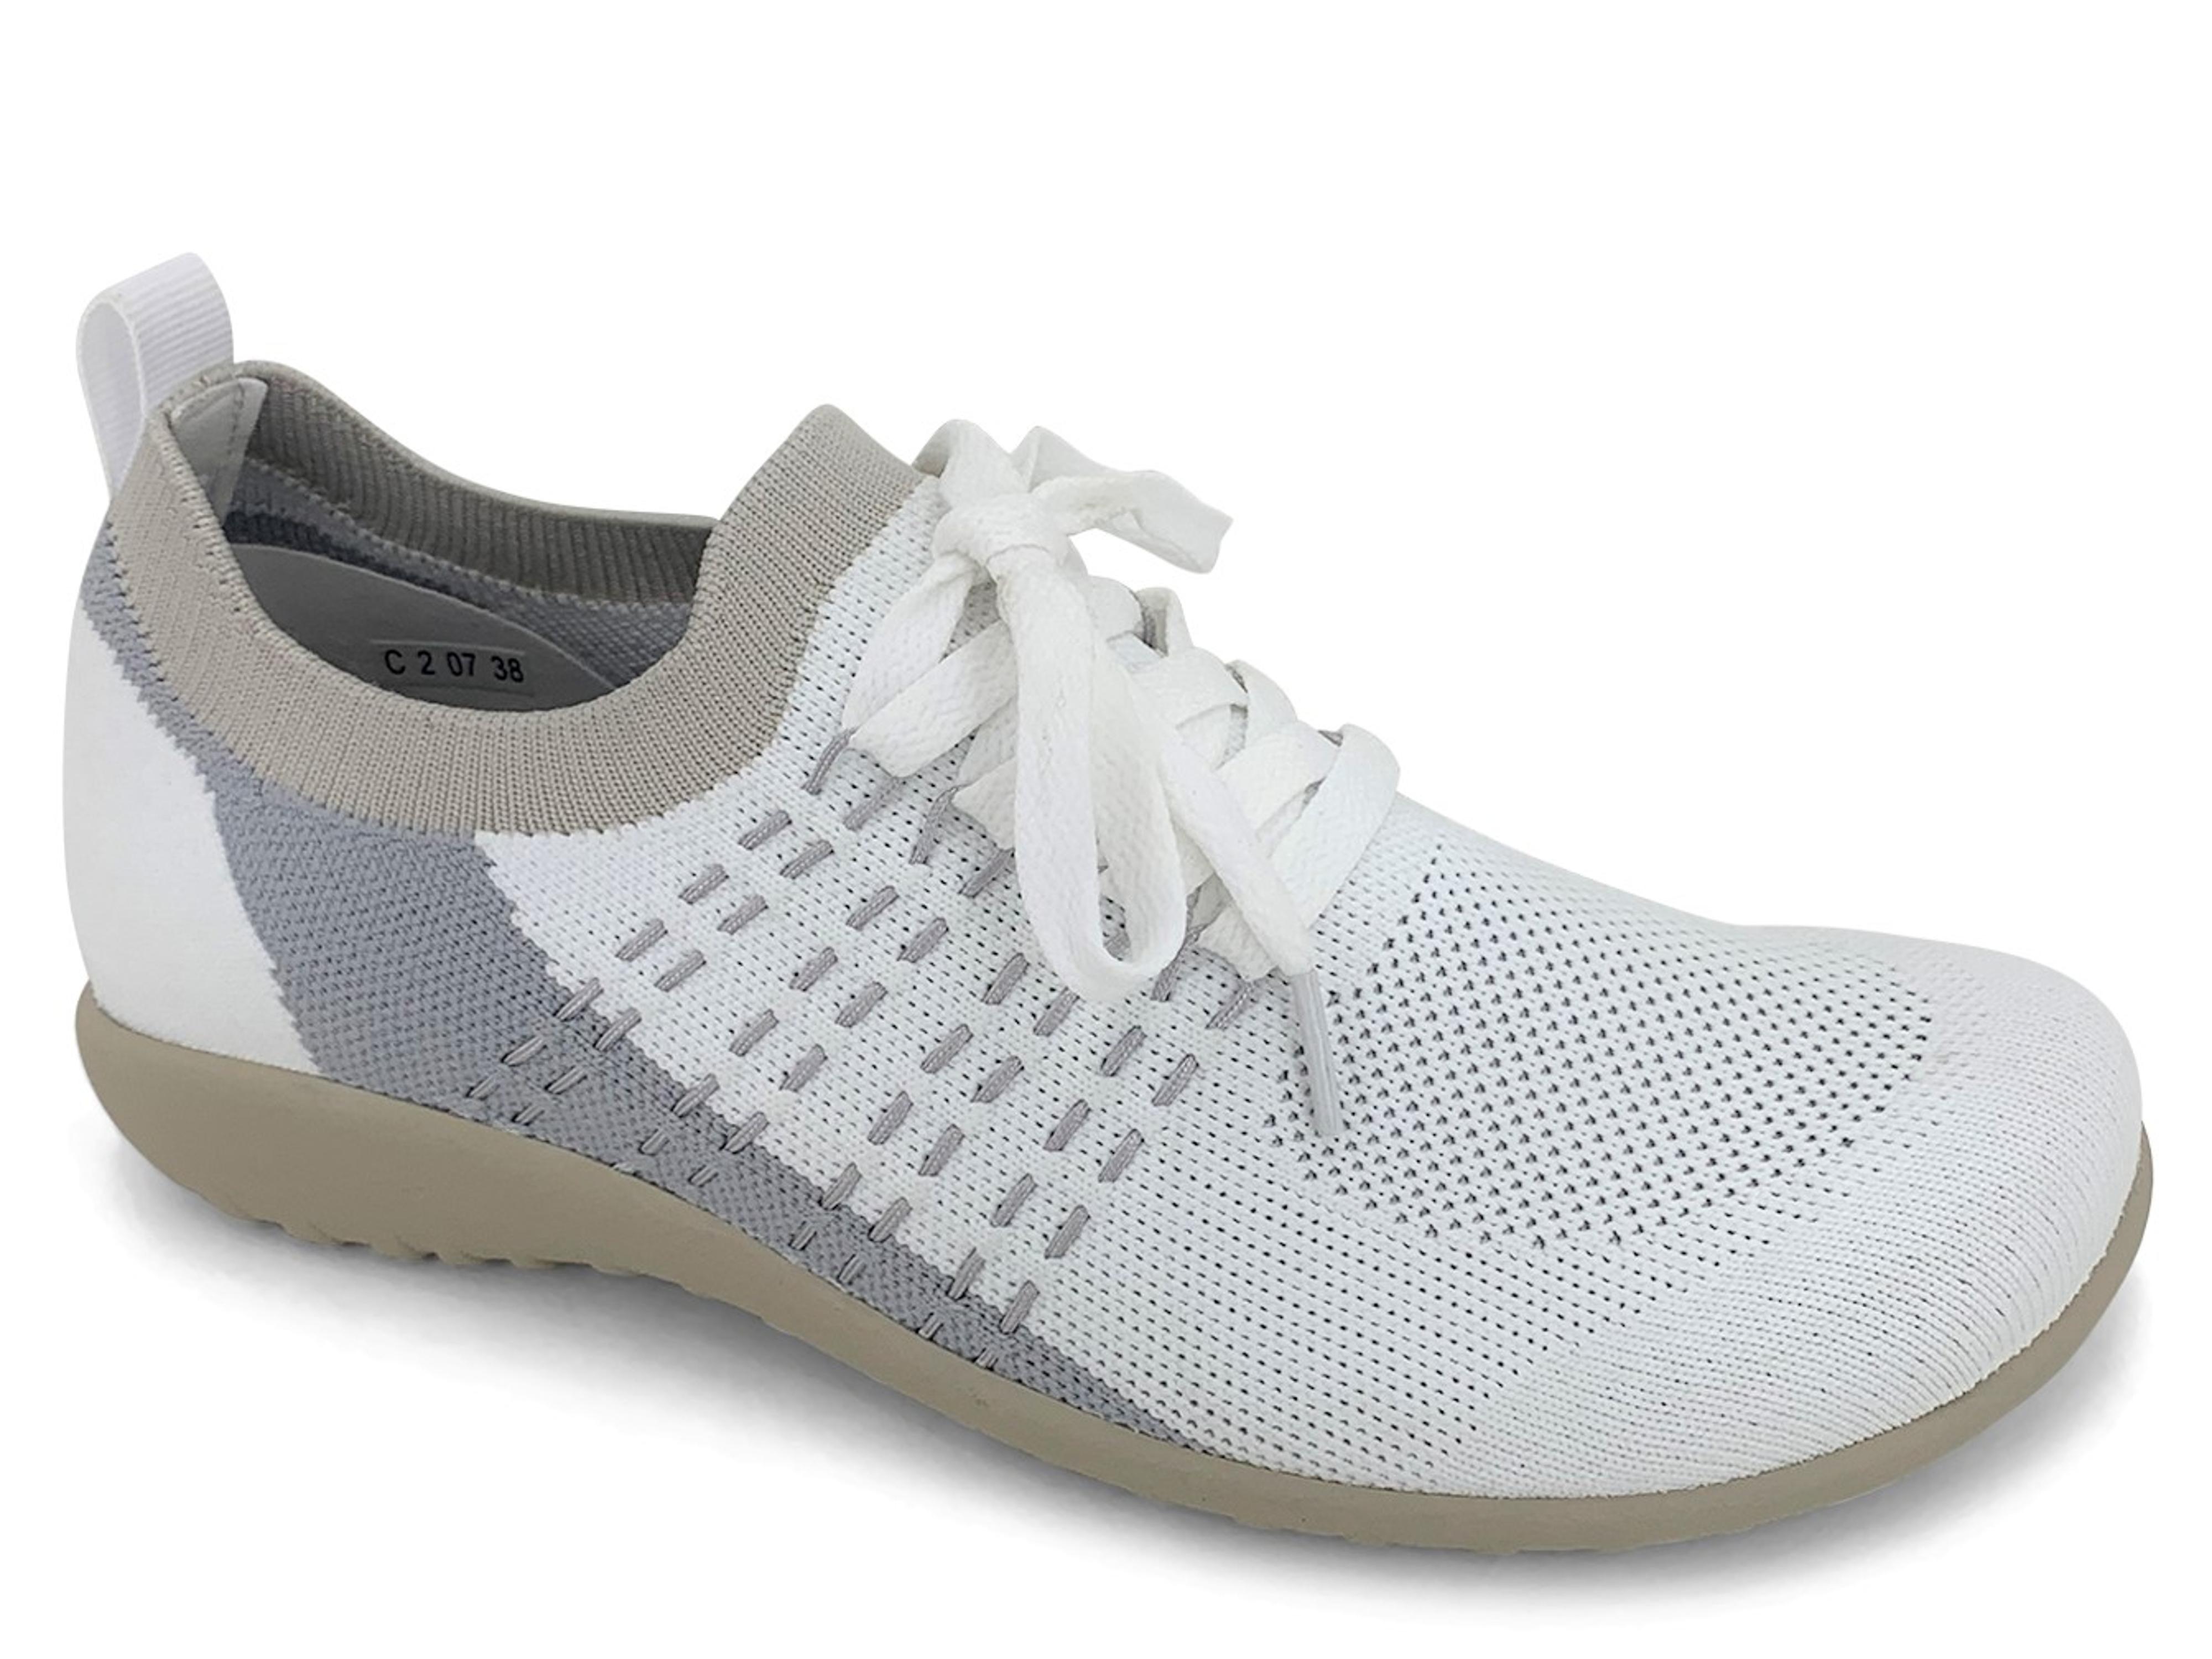 Naot Tama Sneaker White : The Shoe Spa